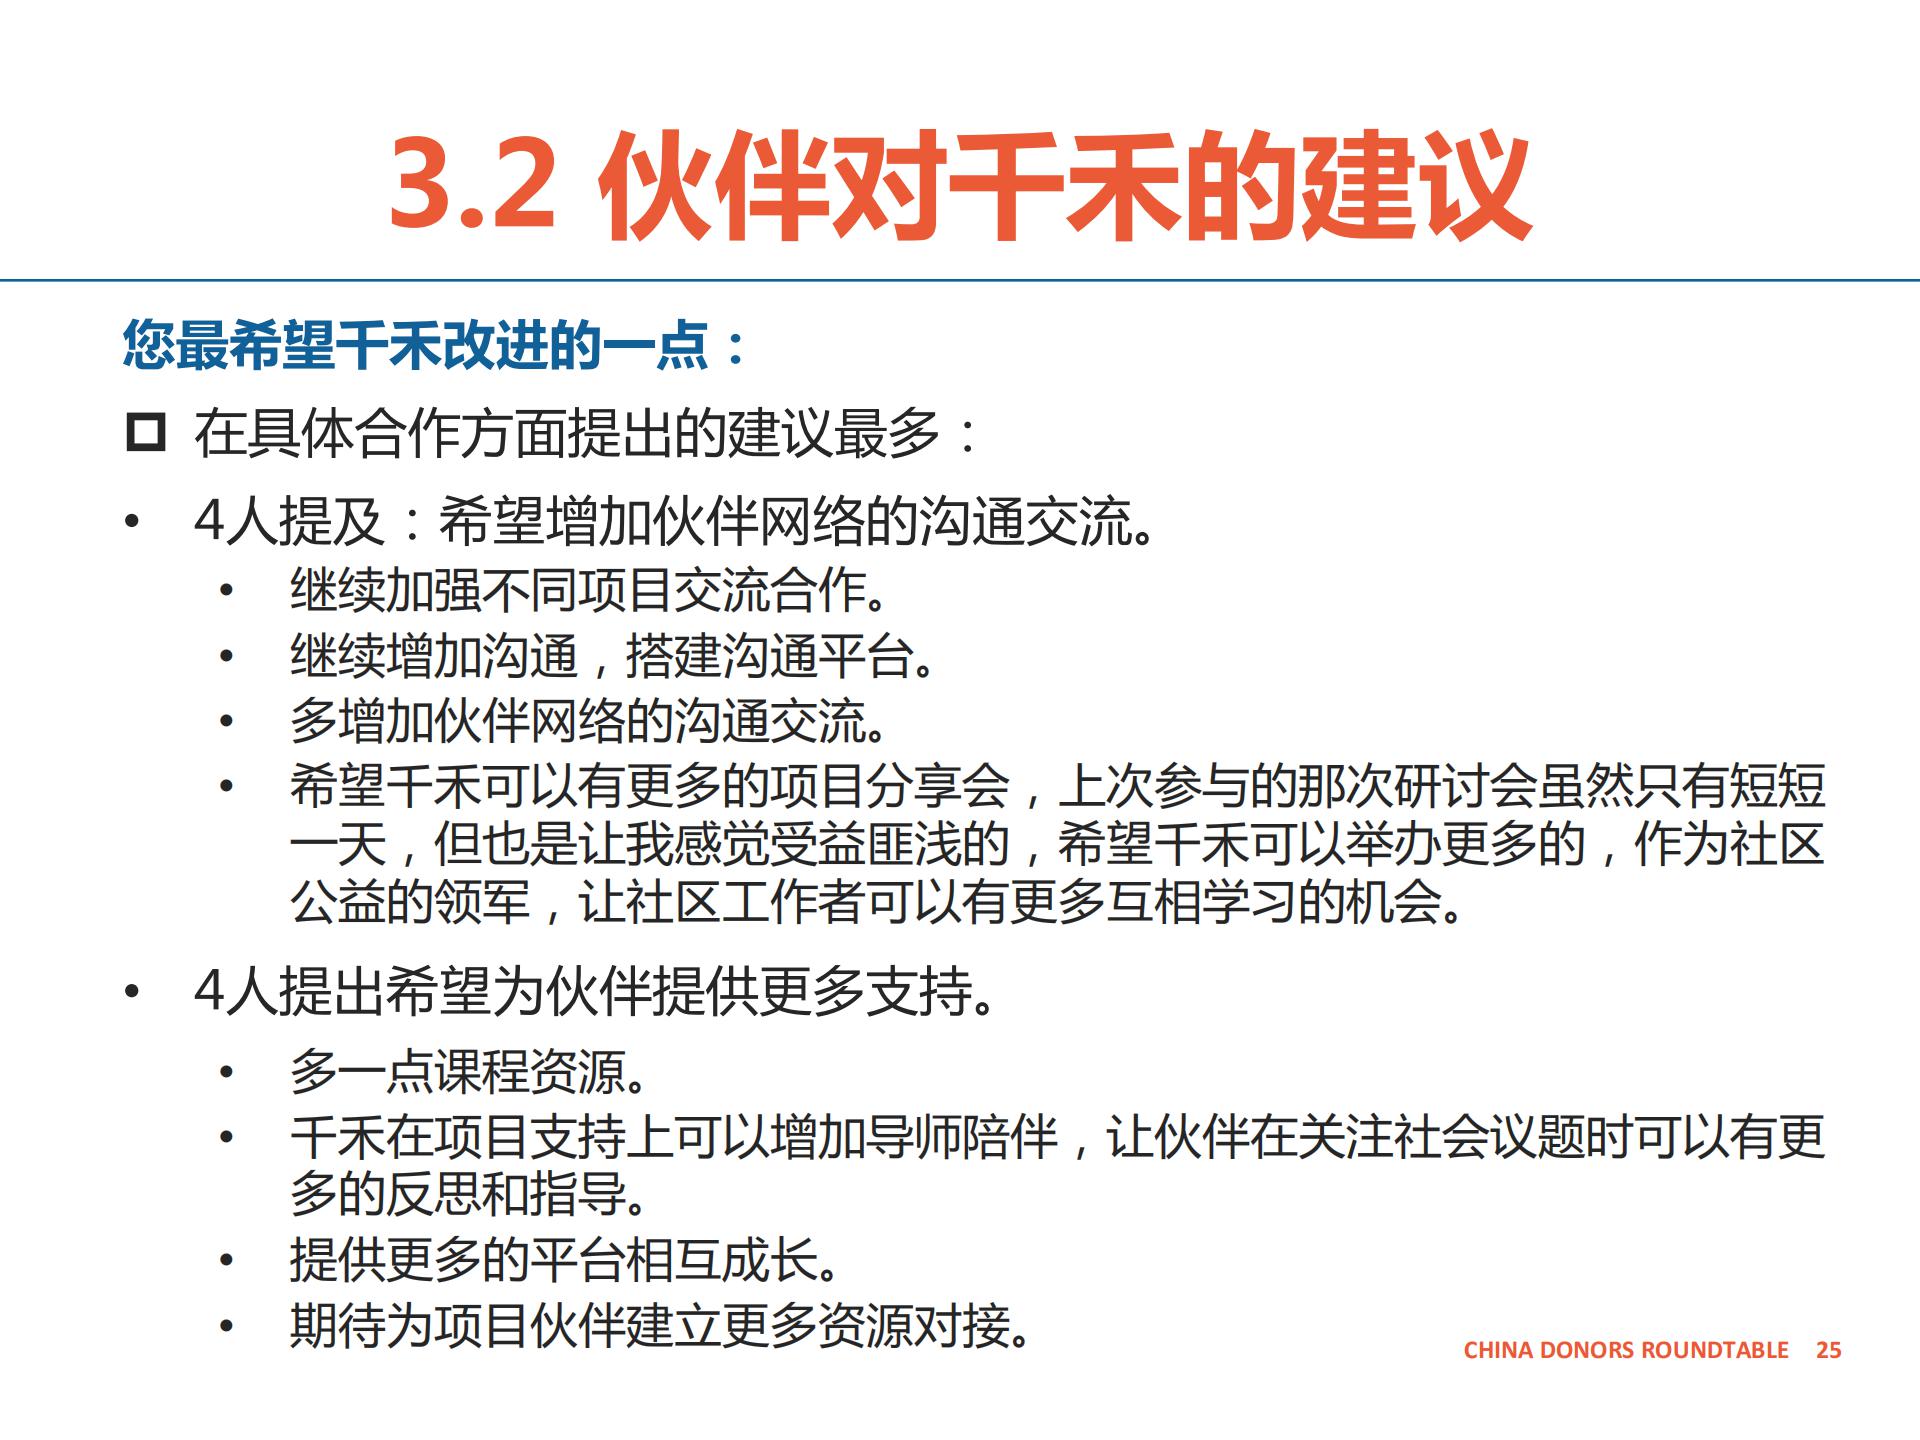 合作伙伴反馈报告-千禾-公开版_24.jpg